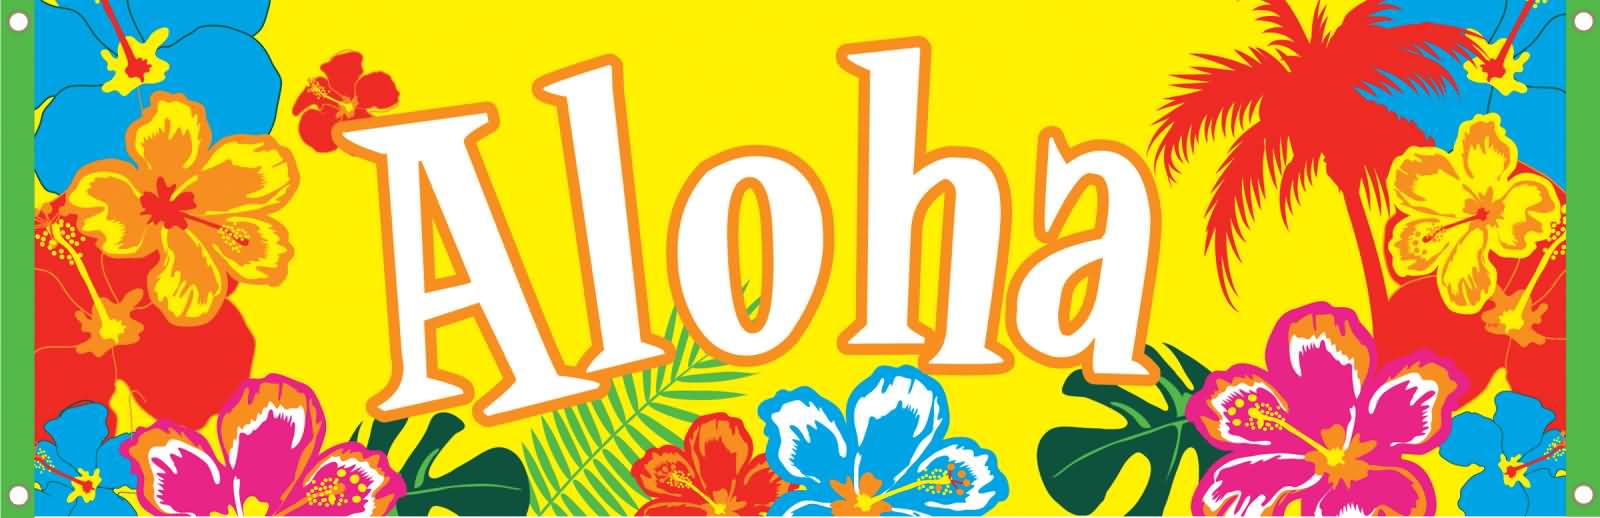 Clipart Aloha Sticker Royalty